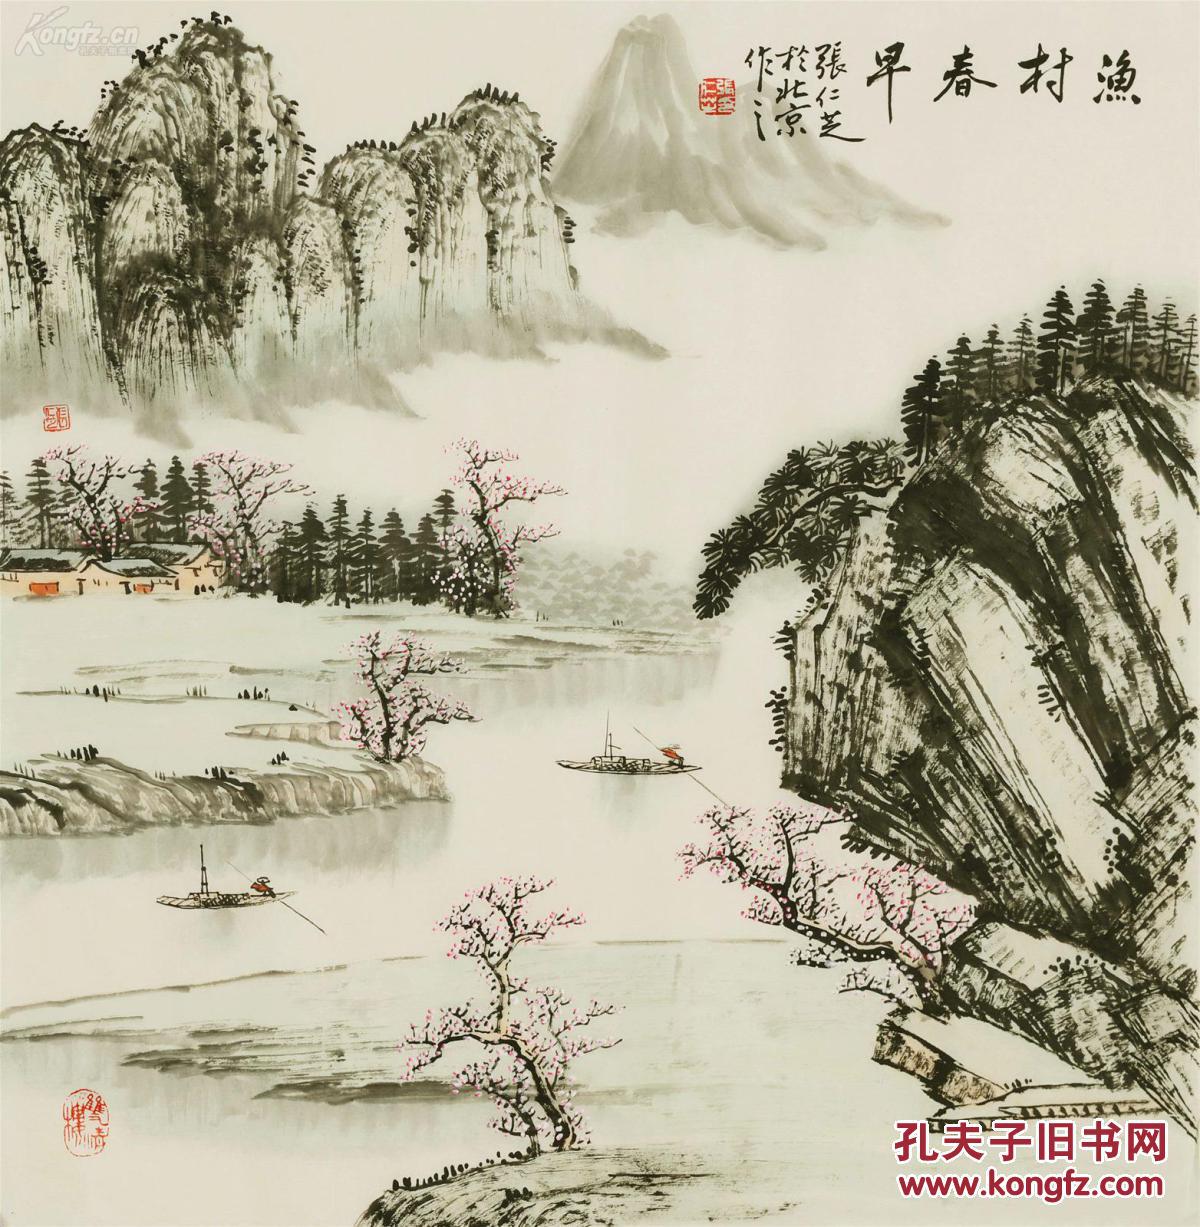 字画书法,【张仁芝 】,著名山水画家,写意,四尺斗方山水,尺寸:68厘米